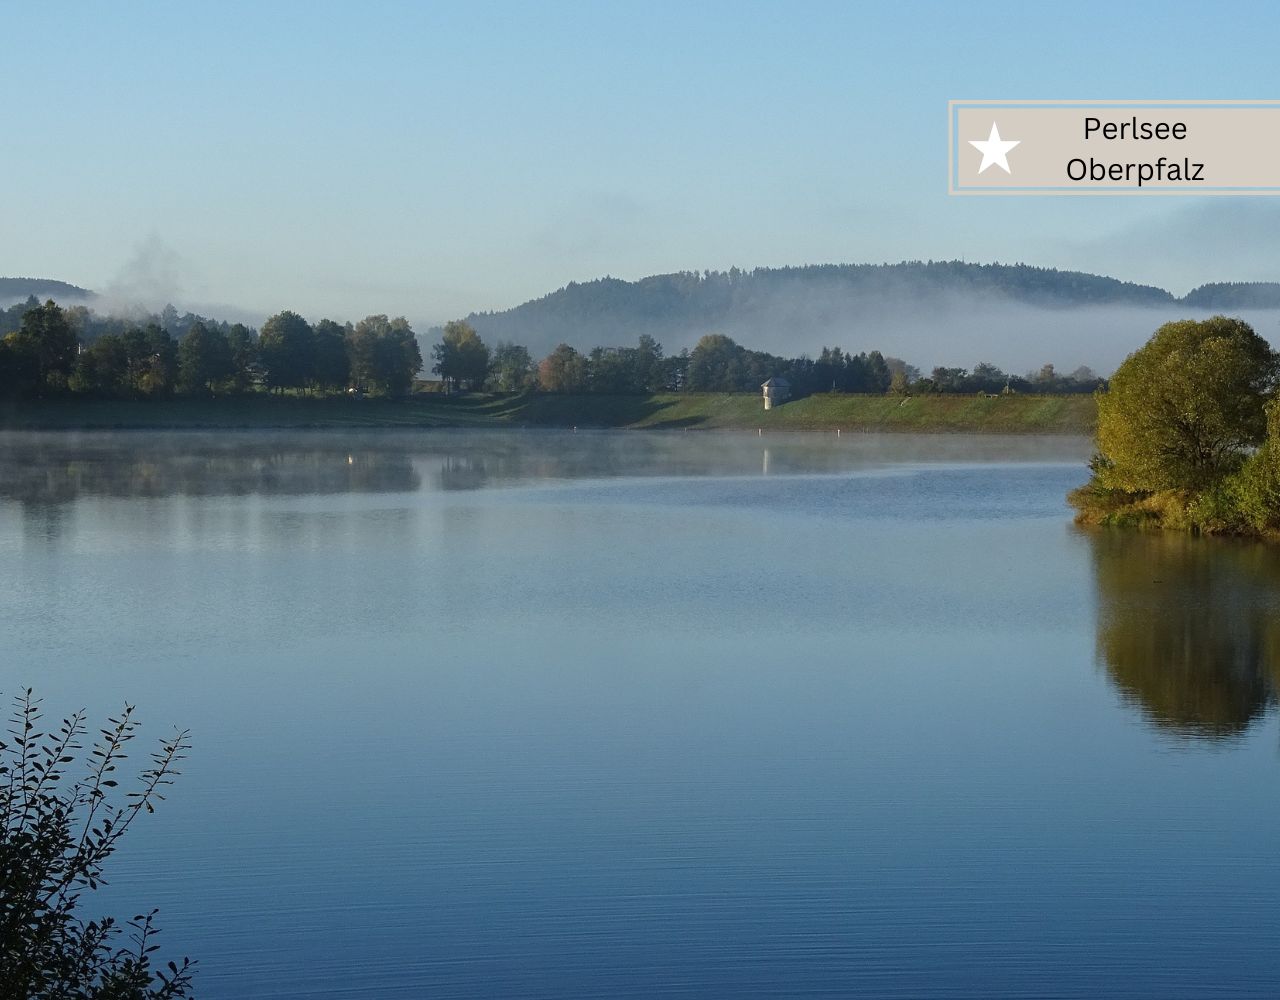 Schöne Bayerische Seen für Wochenendausflug - Geheimtipp Perlsee in der Oberpfalz